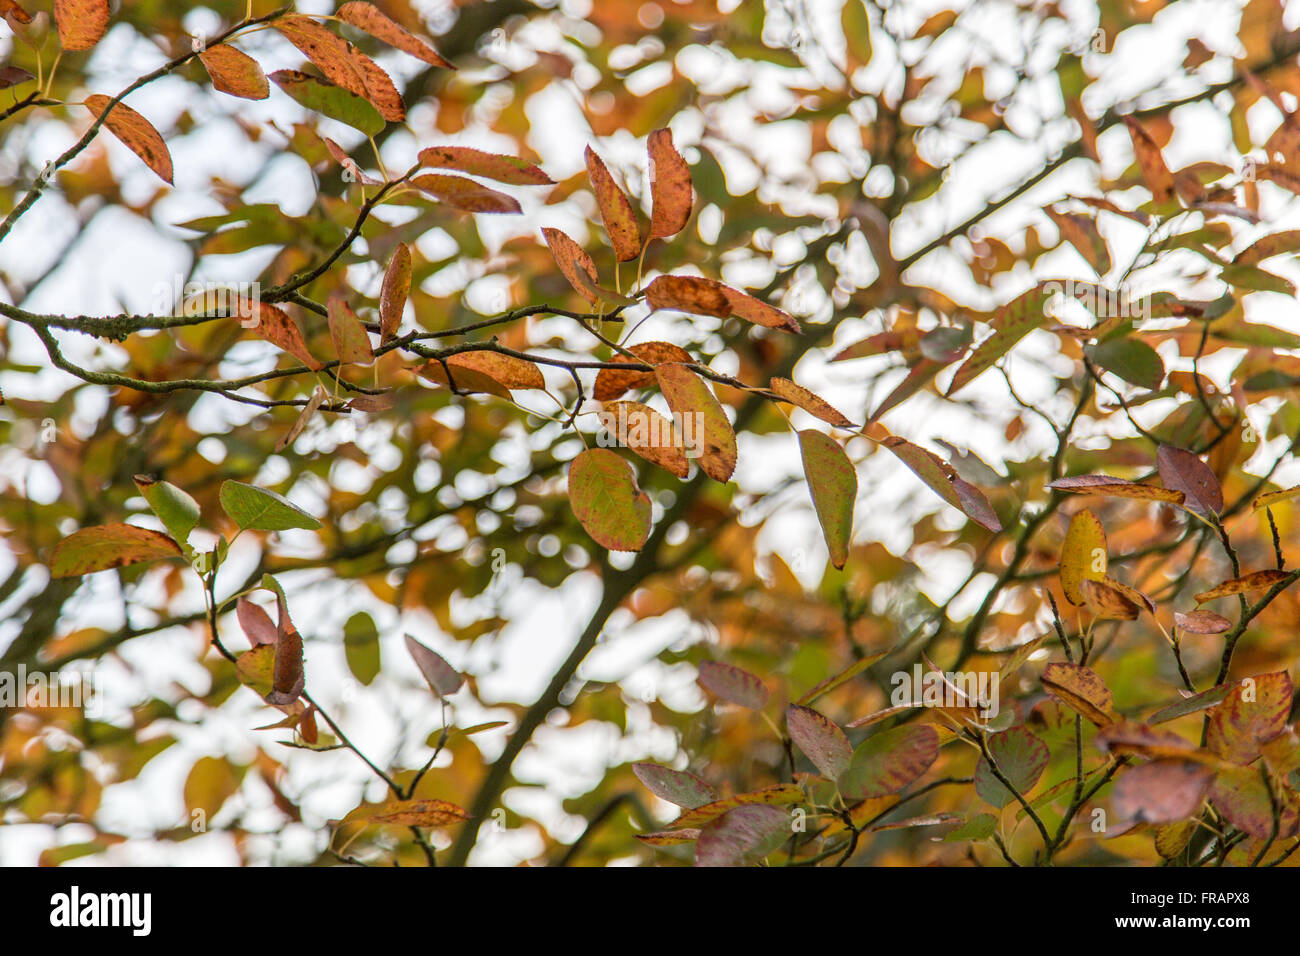 Amalanchier shrub, subtle autumn colour Stock Photo